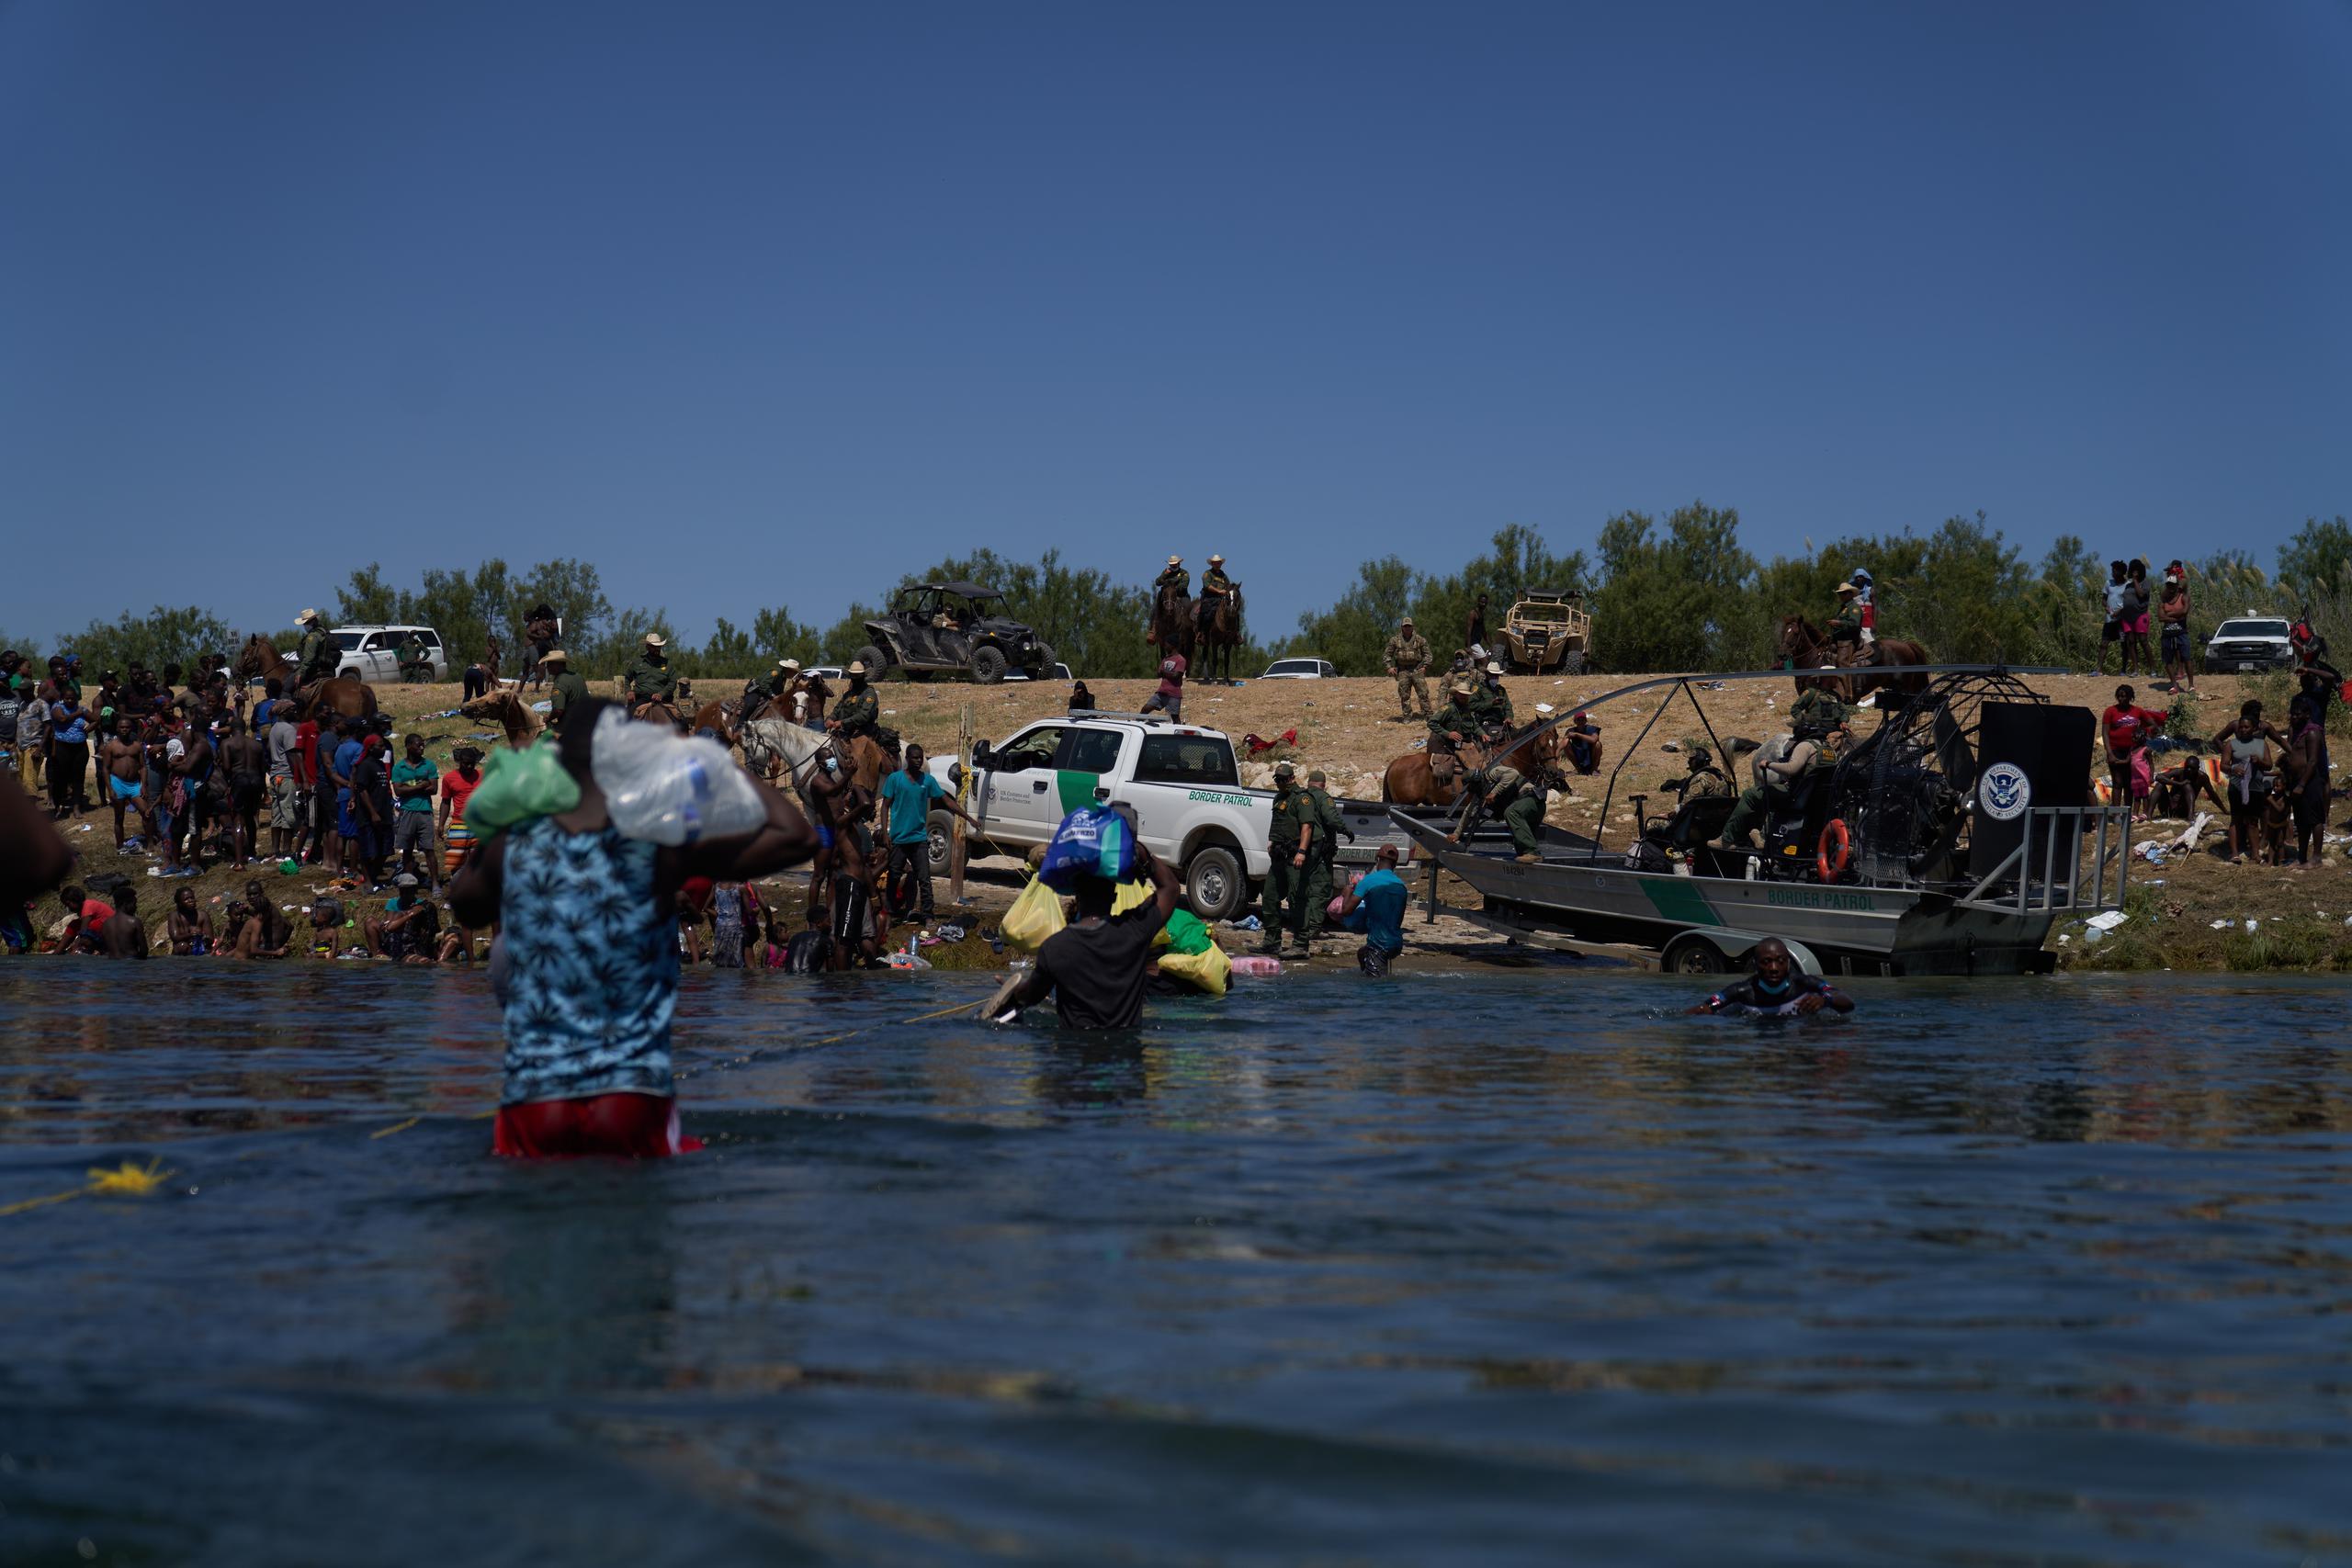 Agentes de la Patrulla Fronteriza de EE.UU. observan mientras migrantes intentan atravesar el Río Grande, desde la ciudad de Acuña, México, el 20 de septiembre de 2021. EFE/Allinson Dinner
